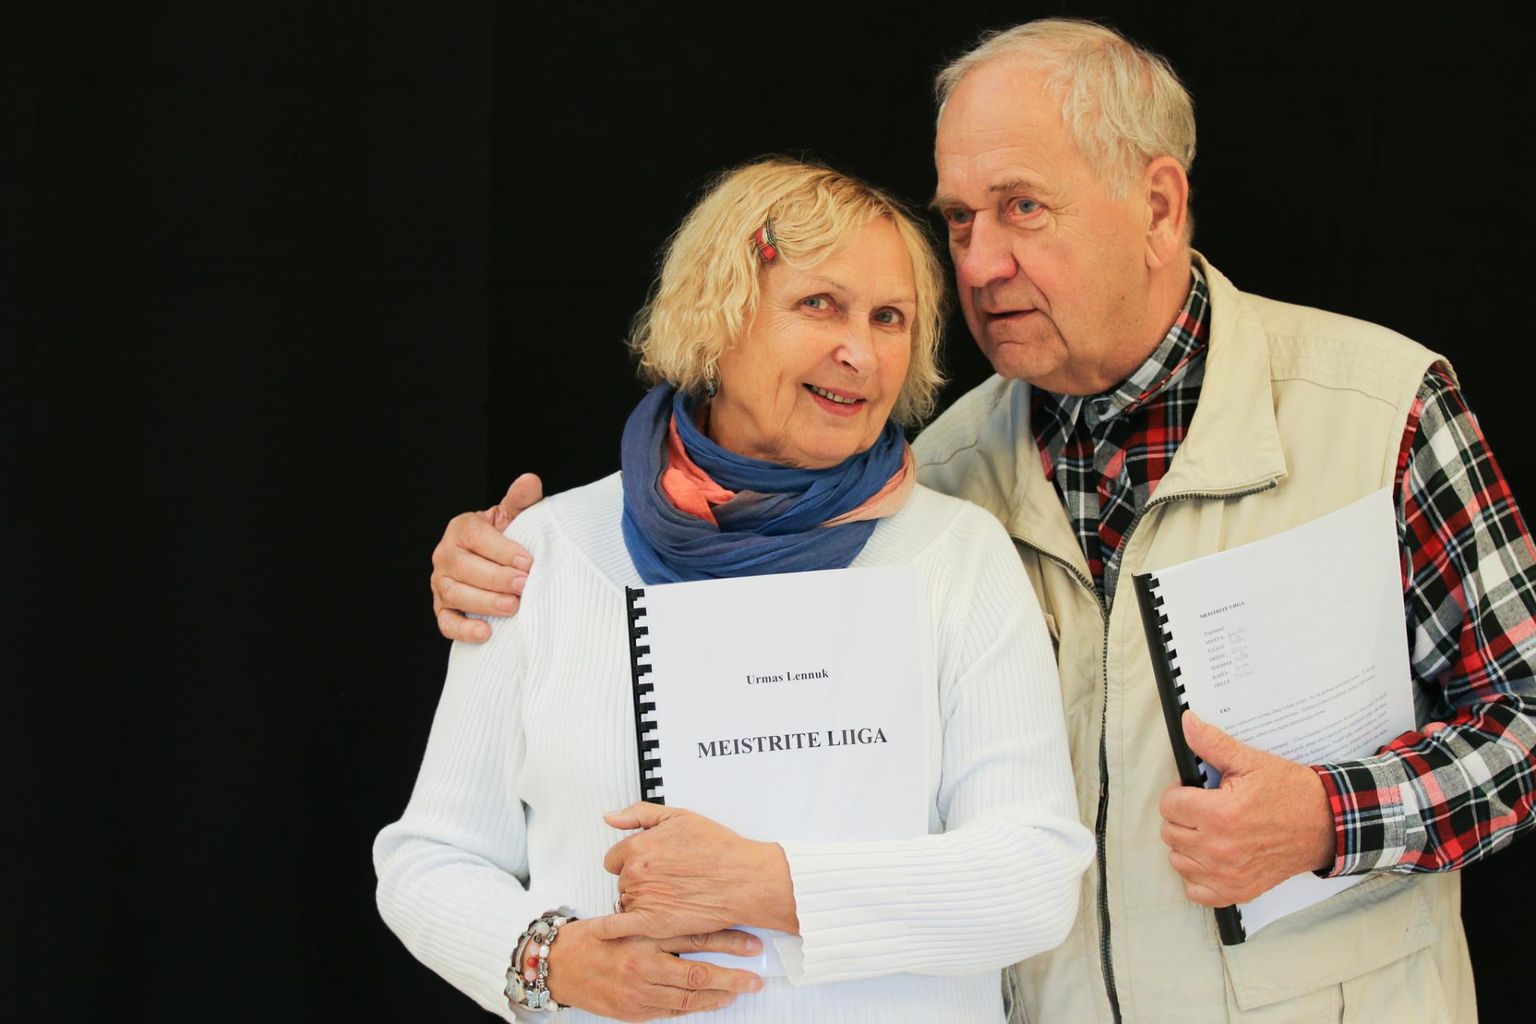 Urmas Lennuk on näidendi «Meistrite liiga» kirjutanud ja pühendatud Luule Komissarovile ja Peeter Jürgensile.